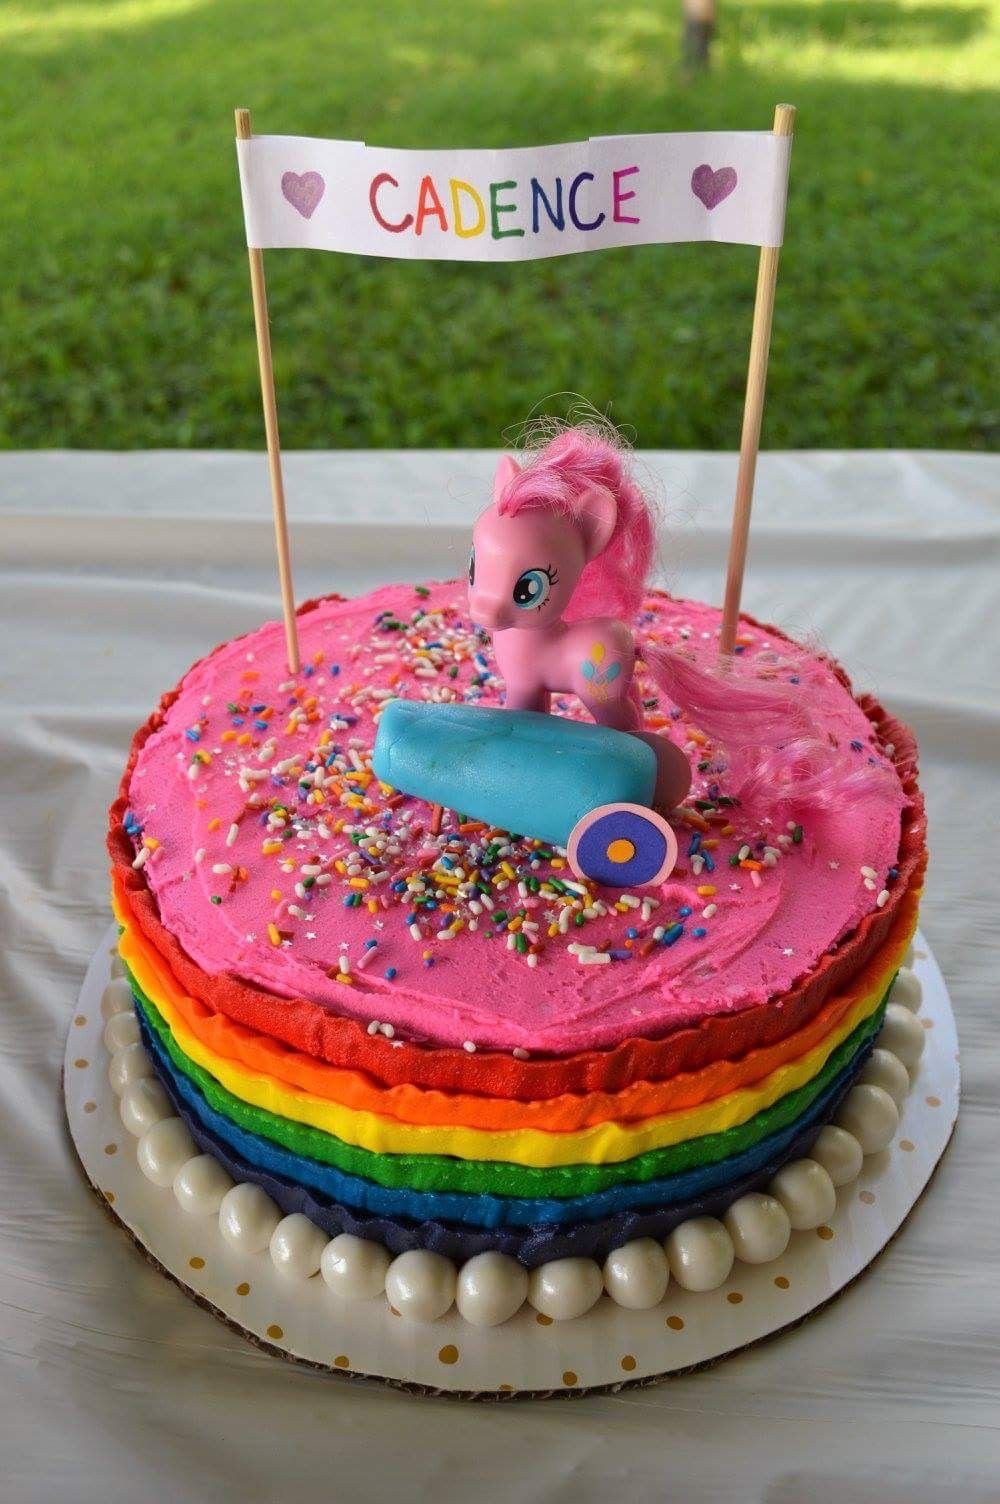 Торт Пинки Пай 6 лет